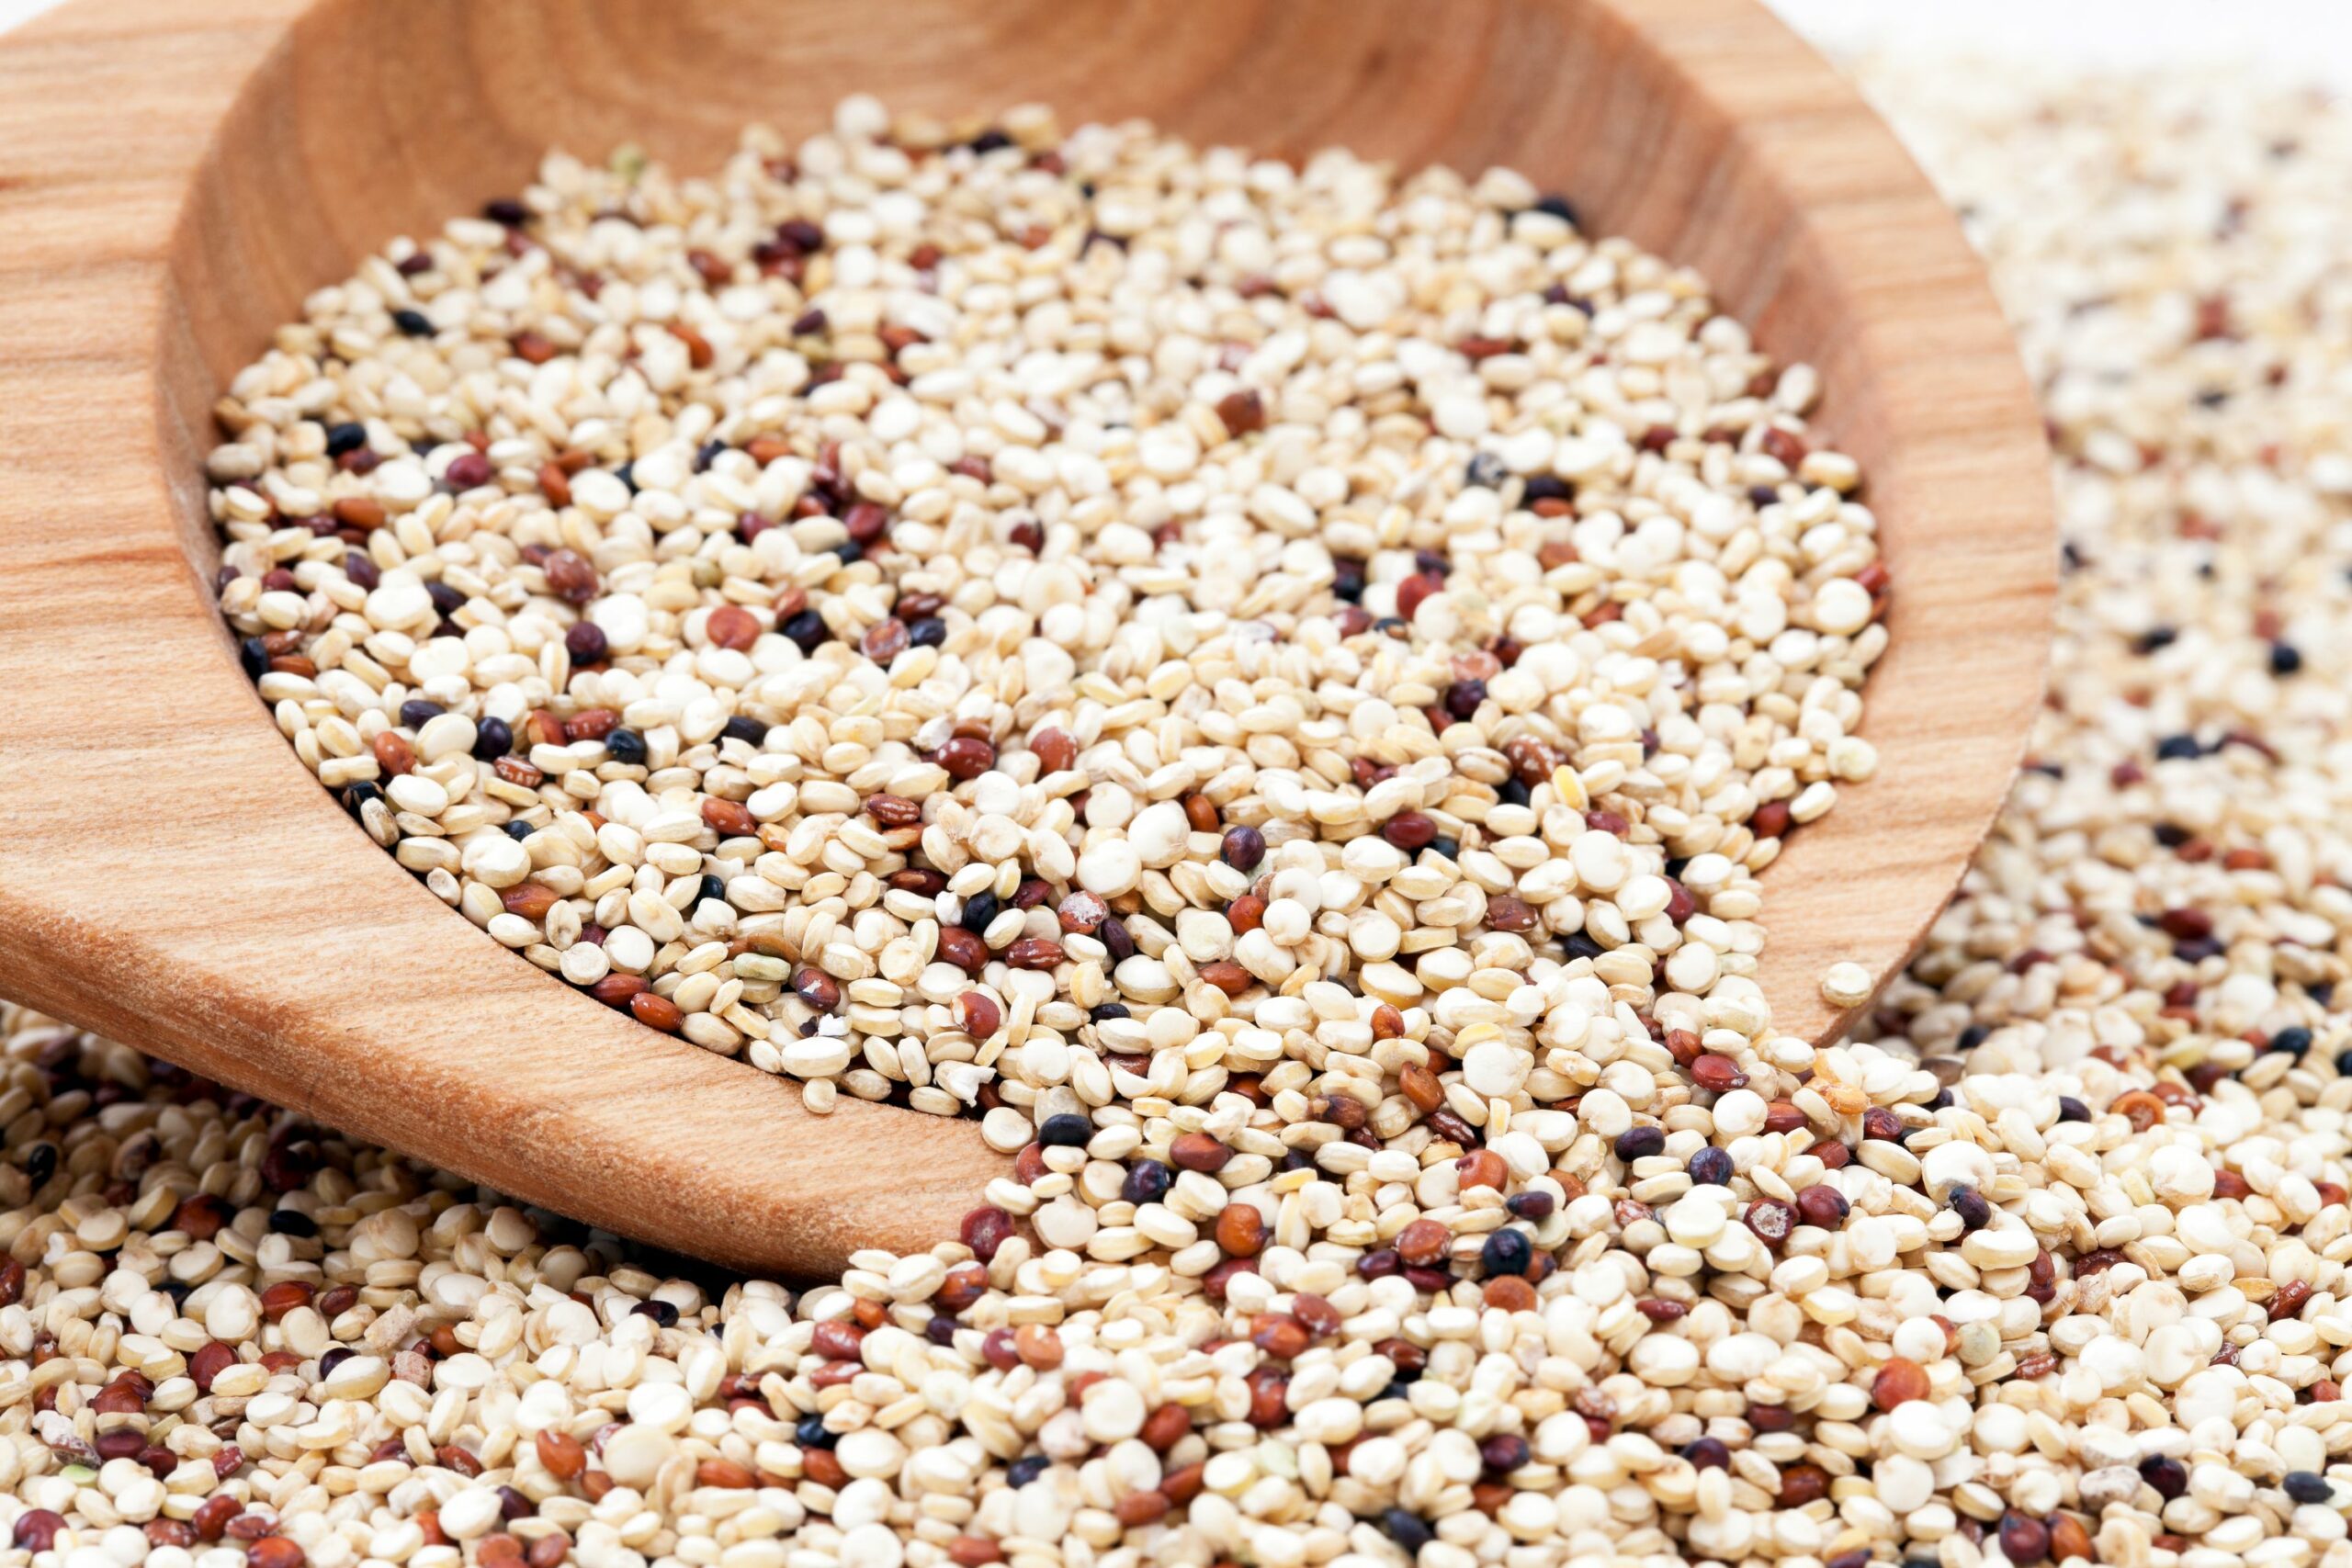 Ist Quinoa gut für Muskelaufbau? (Jenseits des Hypes)